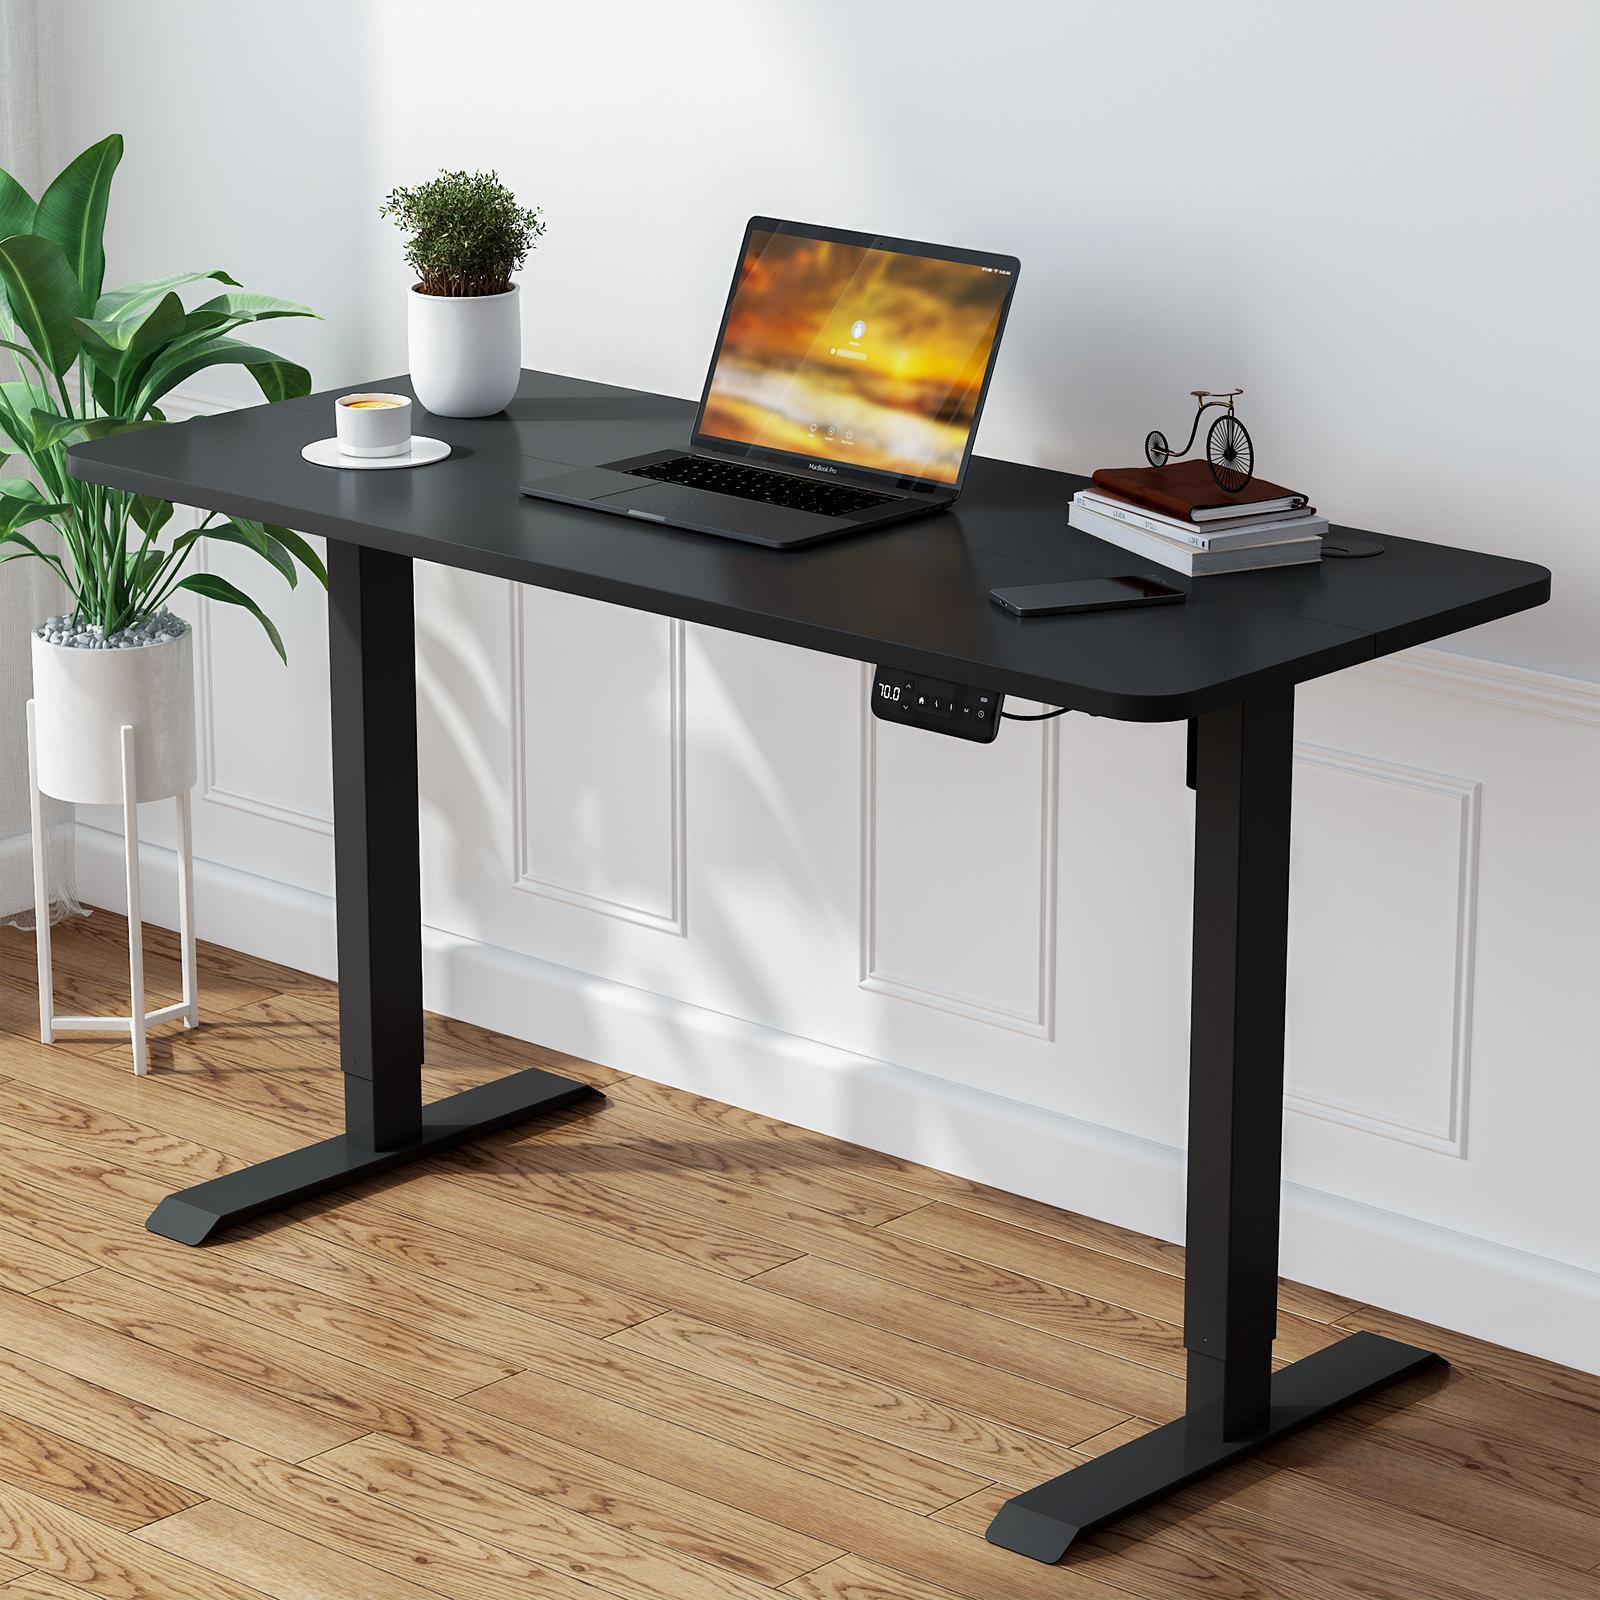 Advwin Standing Desk Height Adjustable (Black)